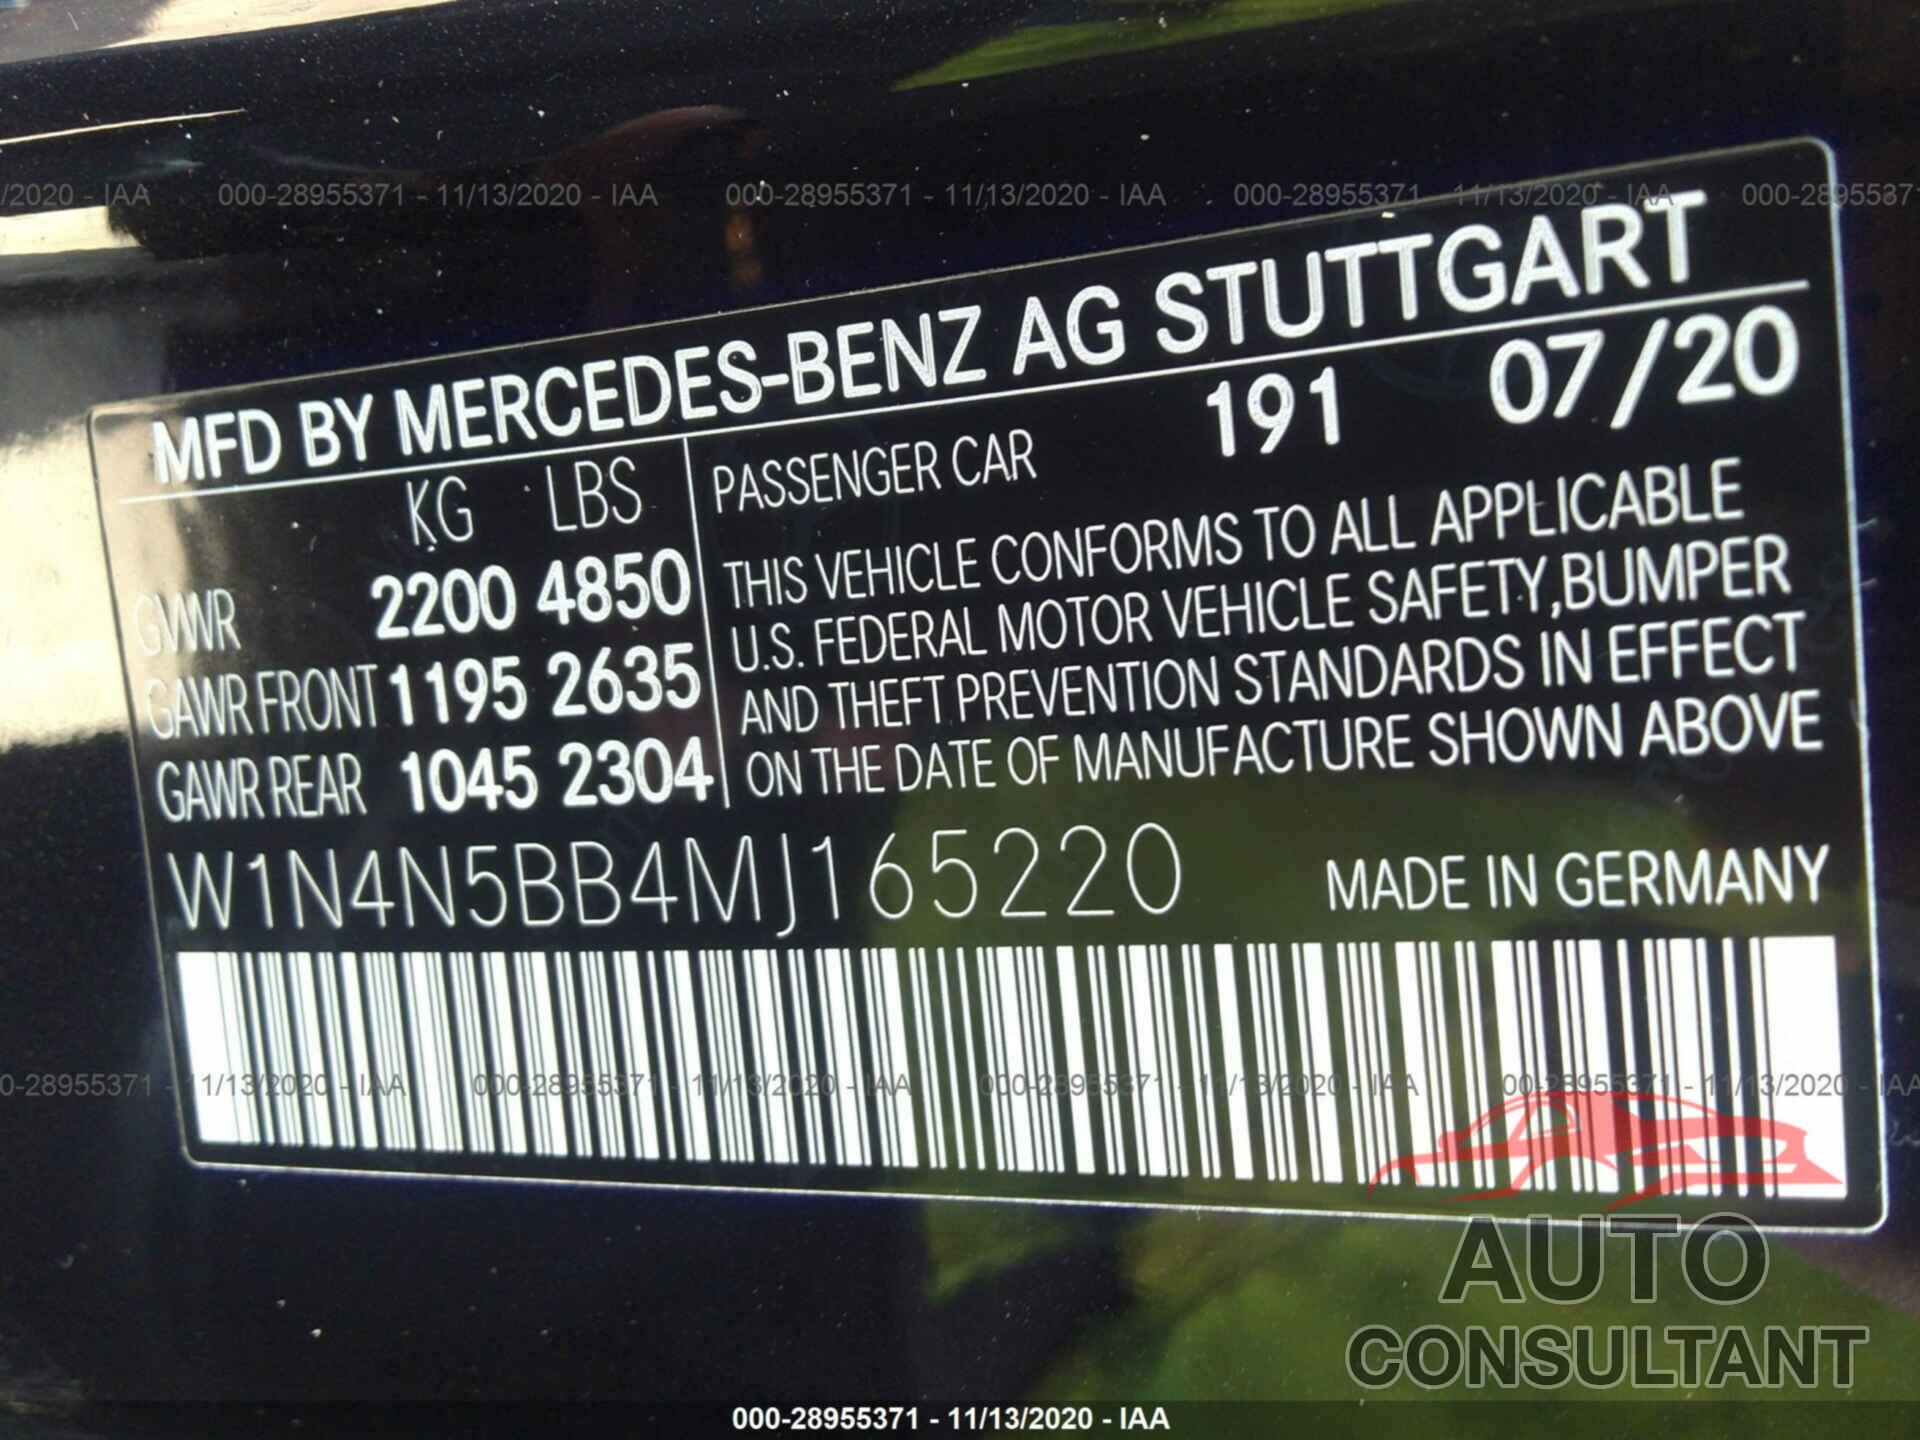 MERCEDES-BENZ AMG GT 2021 - W1N4N5BB4MJ165220